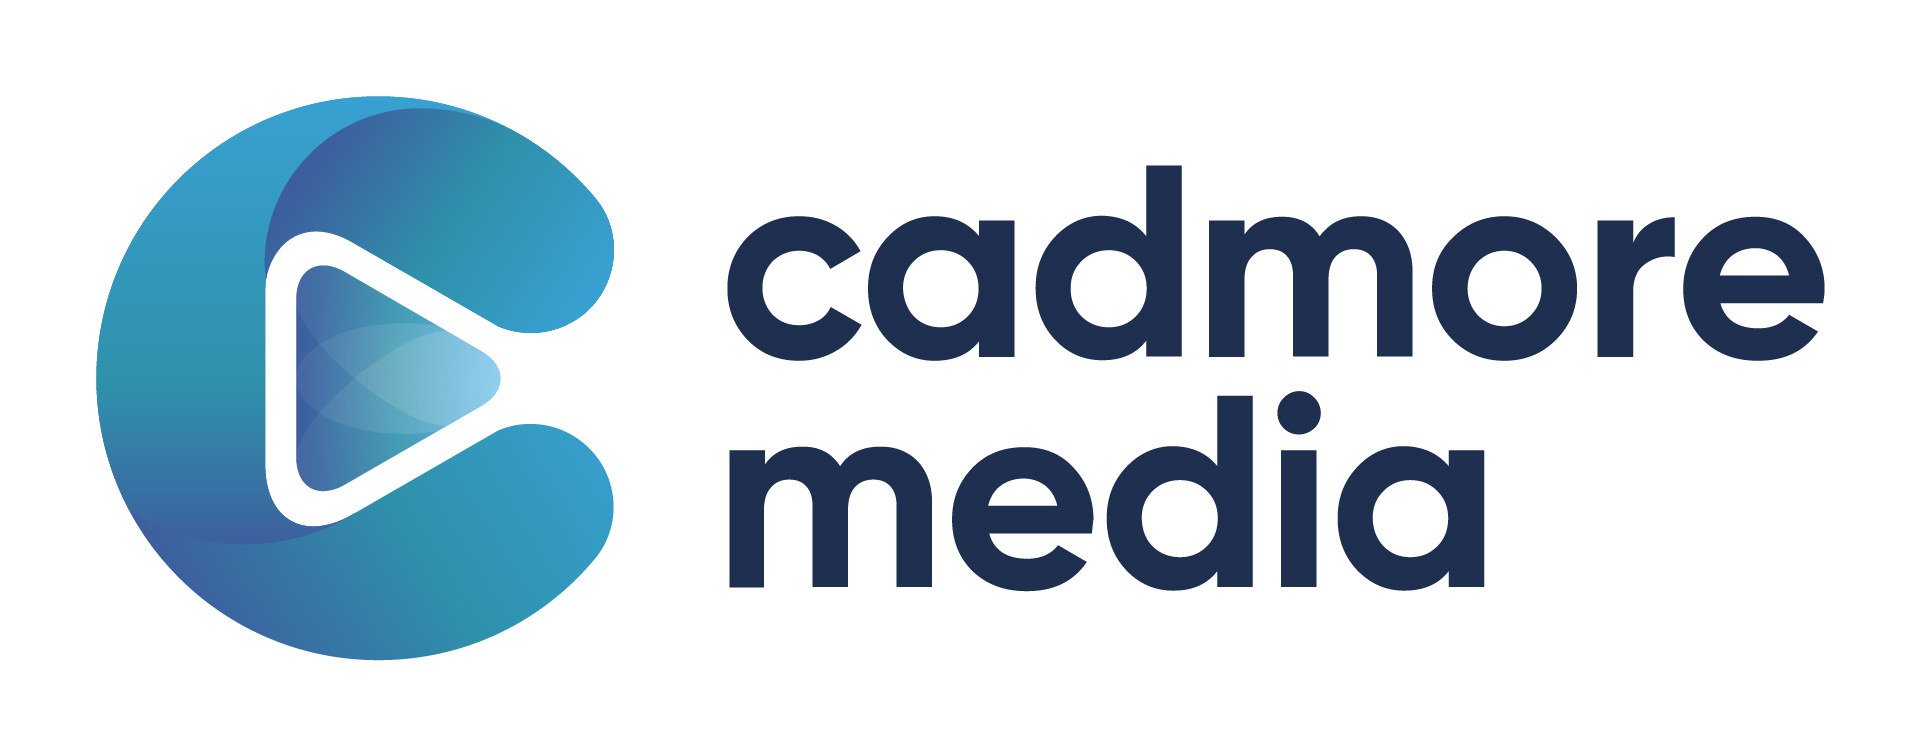 Cadmore Media